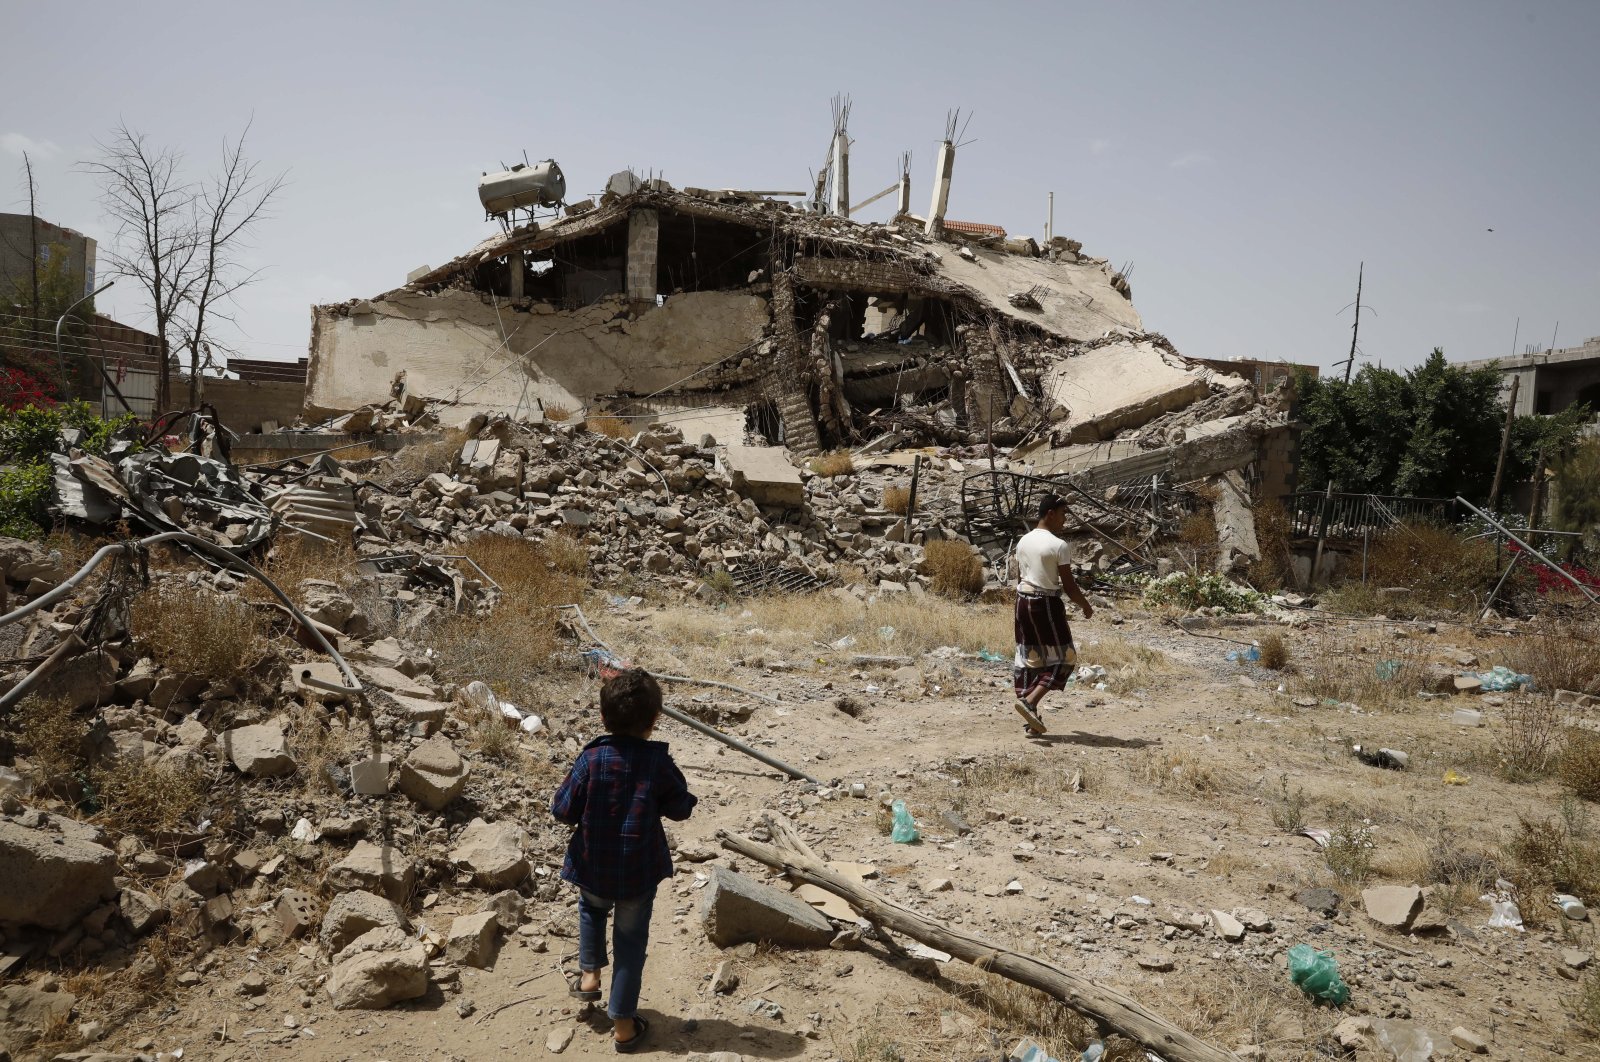 Pihak-pihak yang bertikai di Yaman setuju untuk memperbarui gencatan senjata, kata PBB